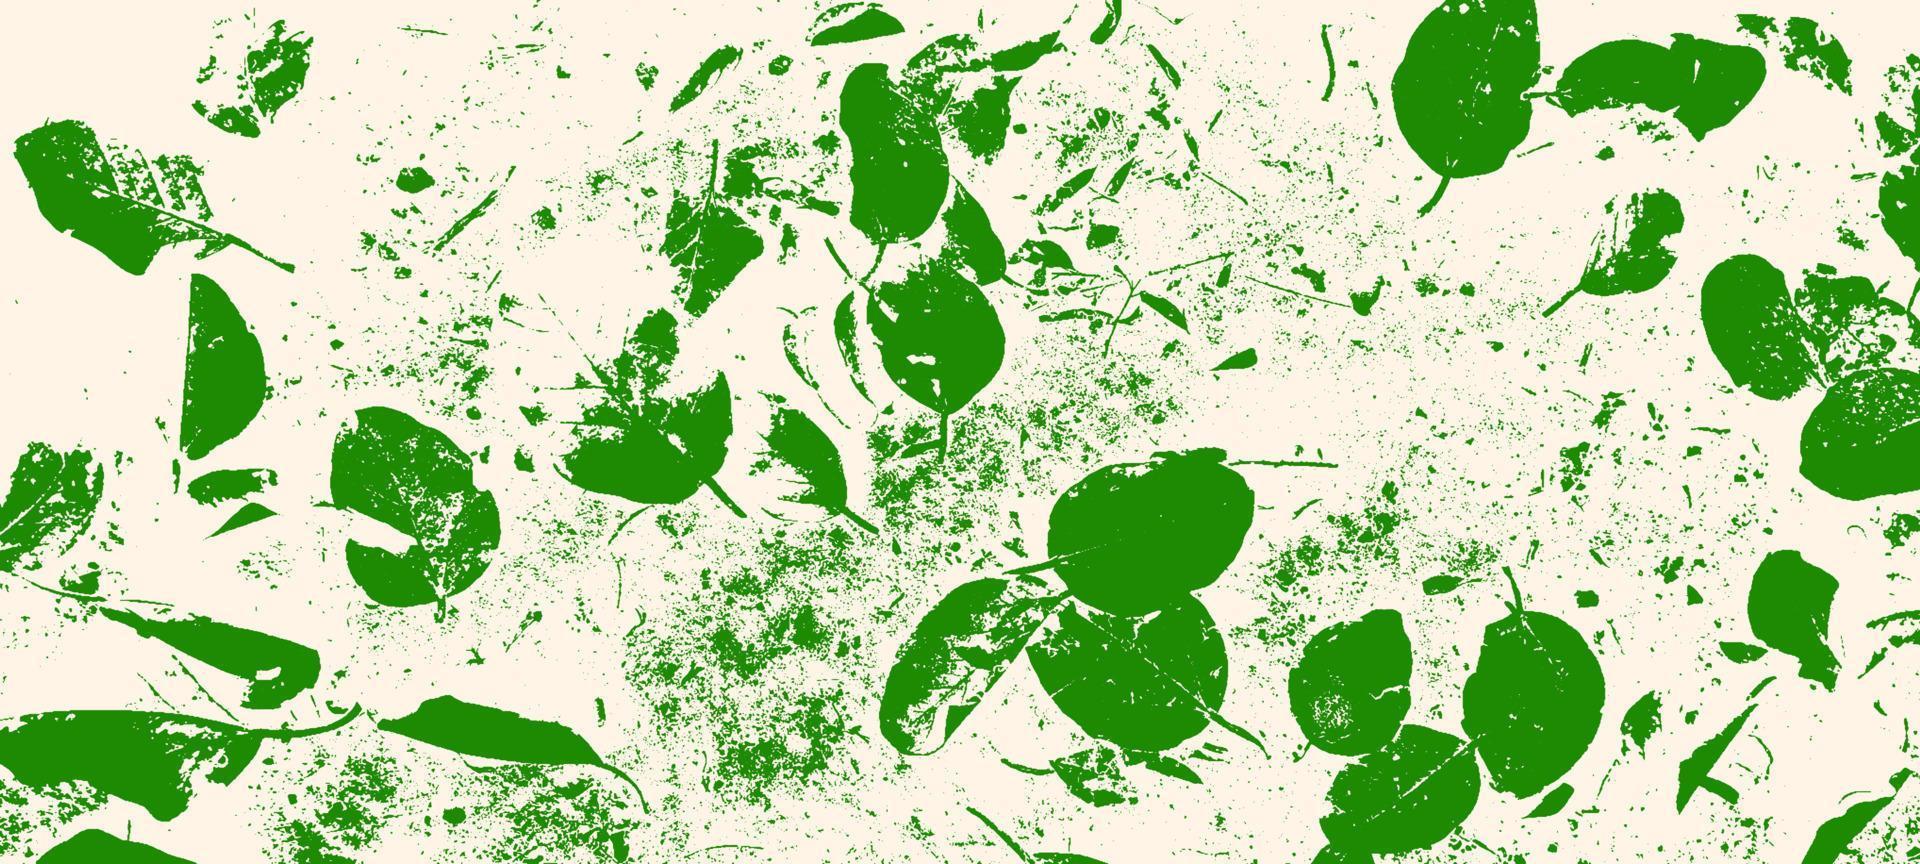 Blätter Muster mit Grunge-Textur. grüne Blattadern Muster Vektor Illustration.